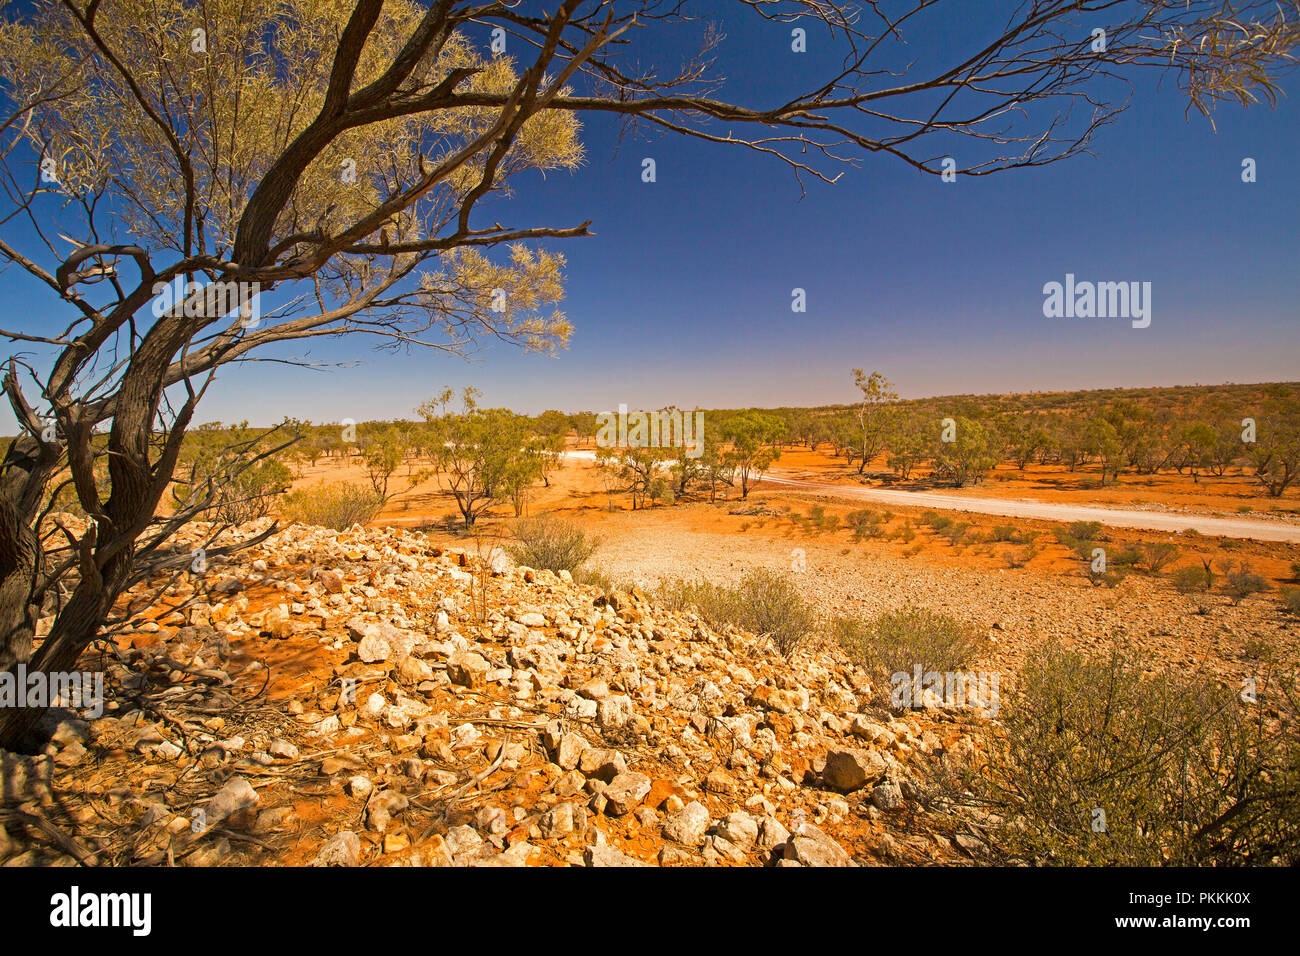 Blick vom steinigen Hügel des Australischen Outback Landschaft mit weg schneiden über Ebenen, Bäume, dieser Ausdehnung zu Horizont unter blauem Himmel in Qld Stockfoto